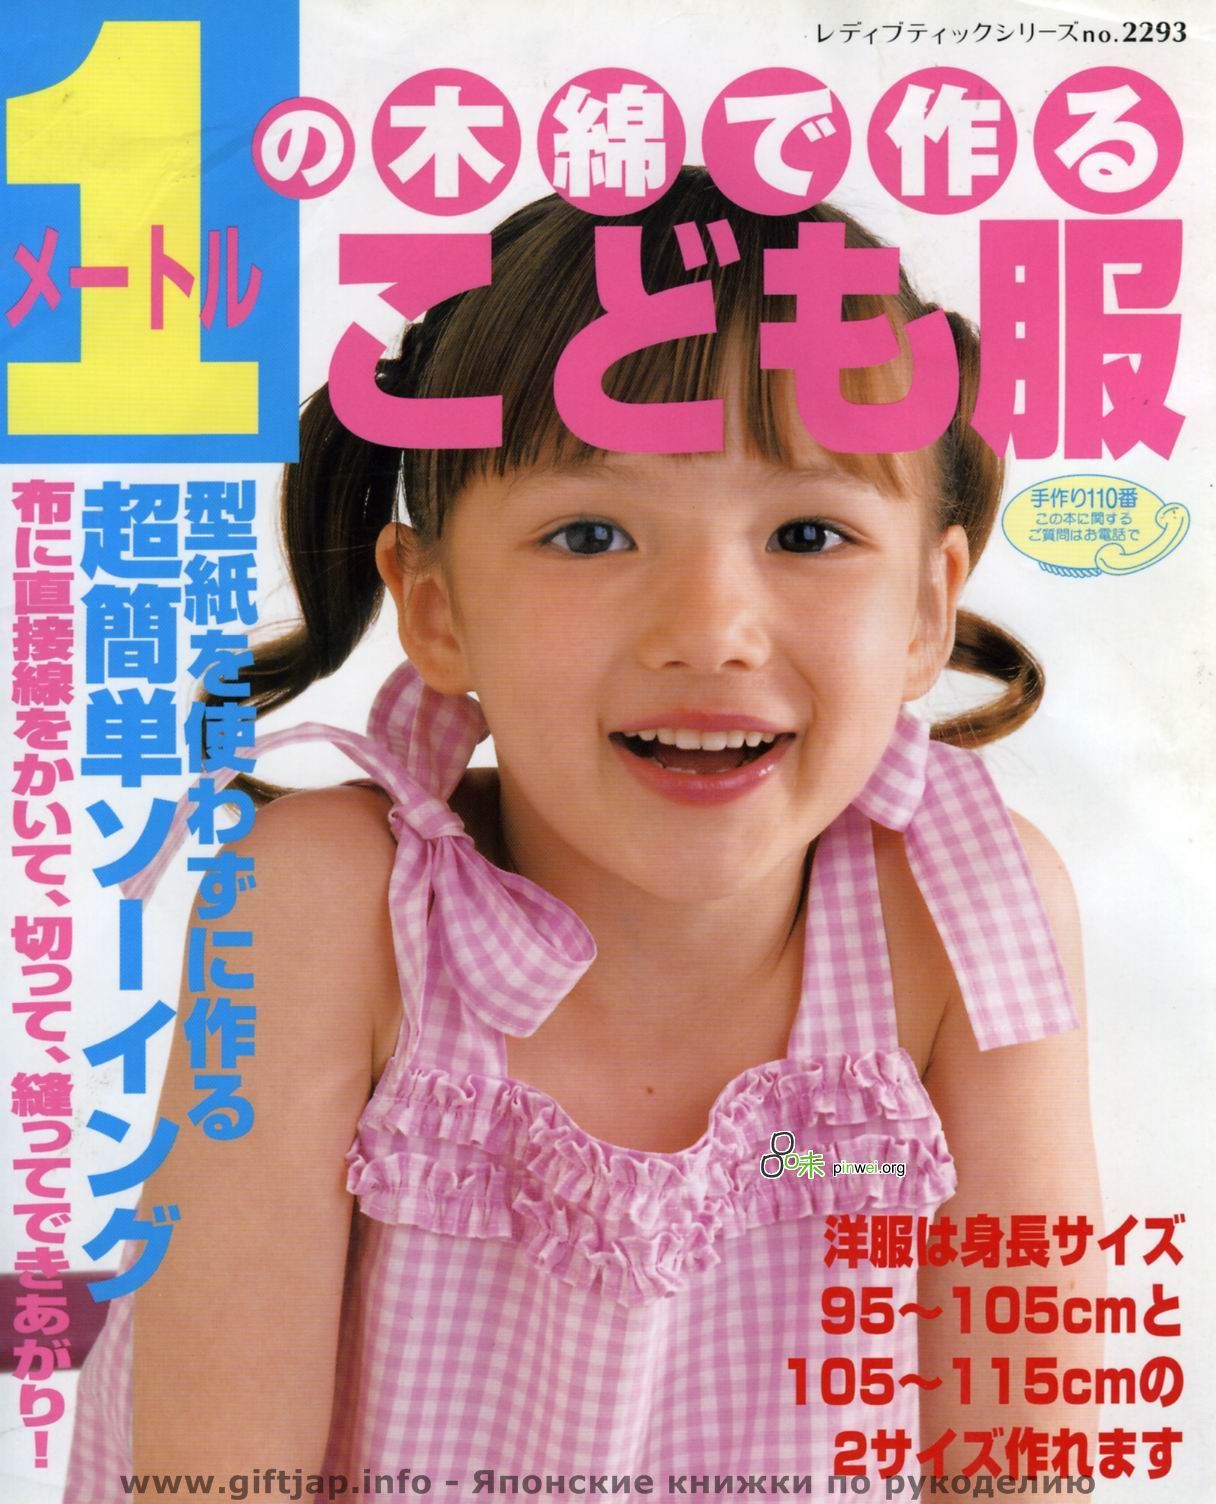 эротика японские дети фото 55